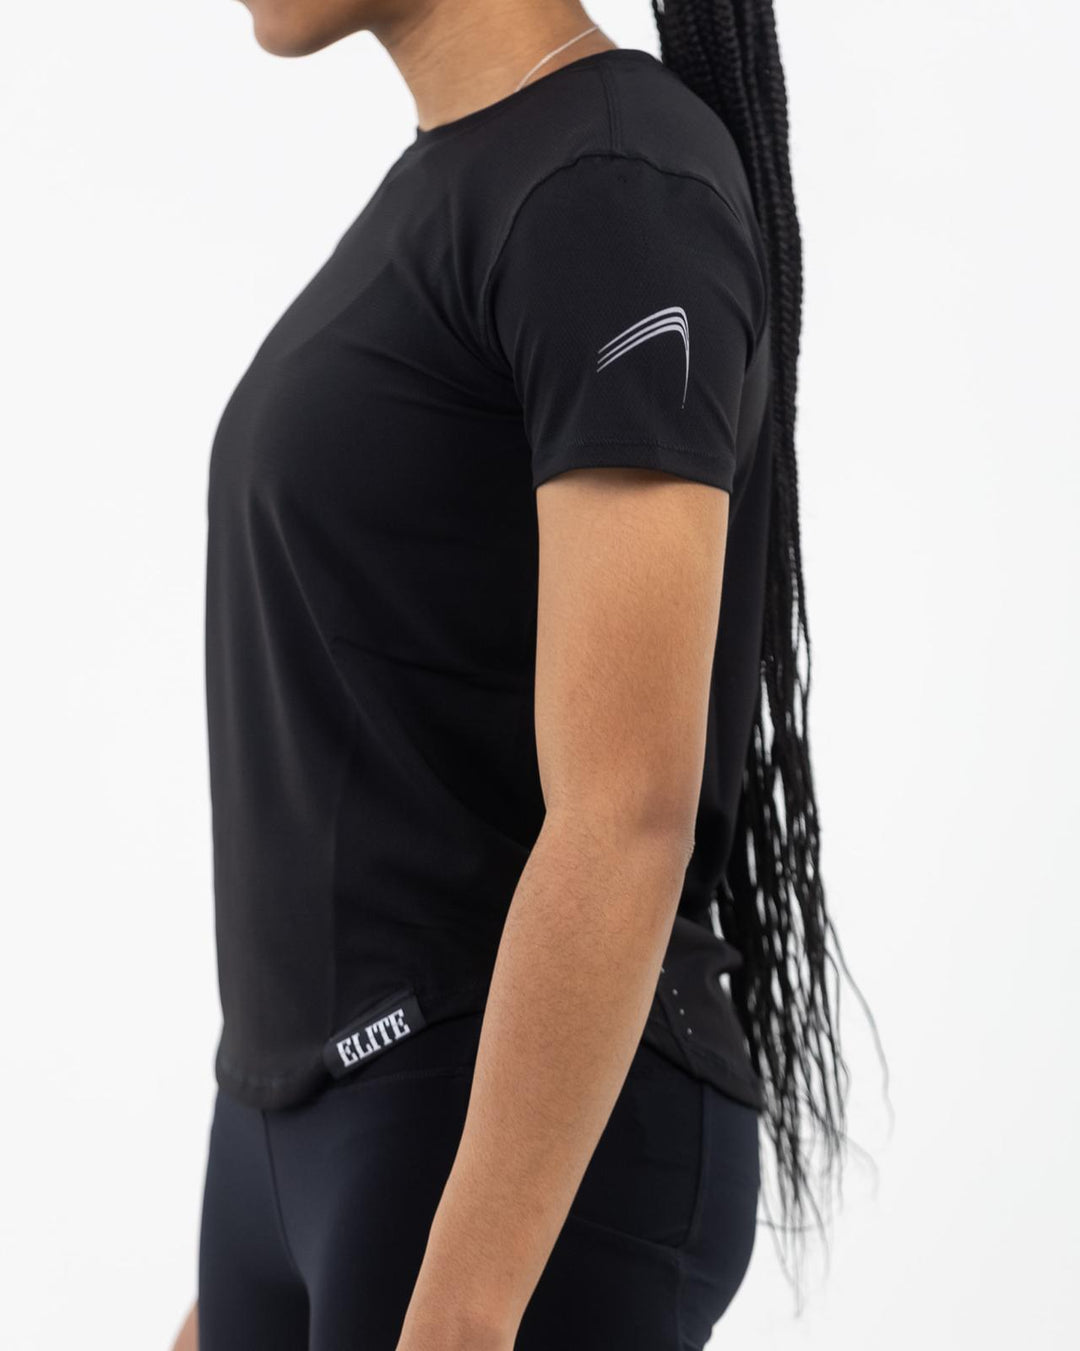 Women’s Mesh Runner Shirt- Black